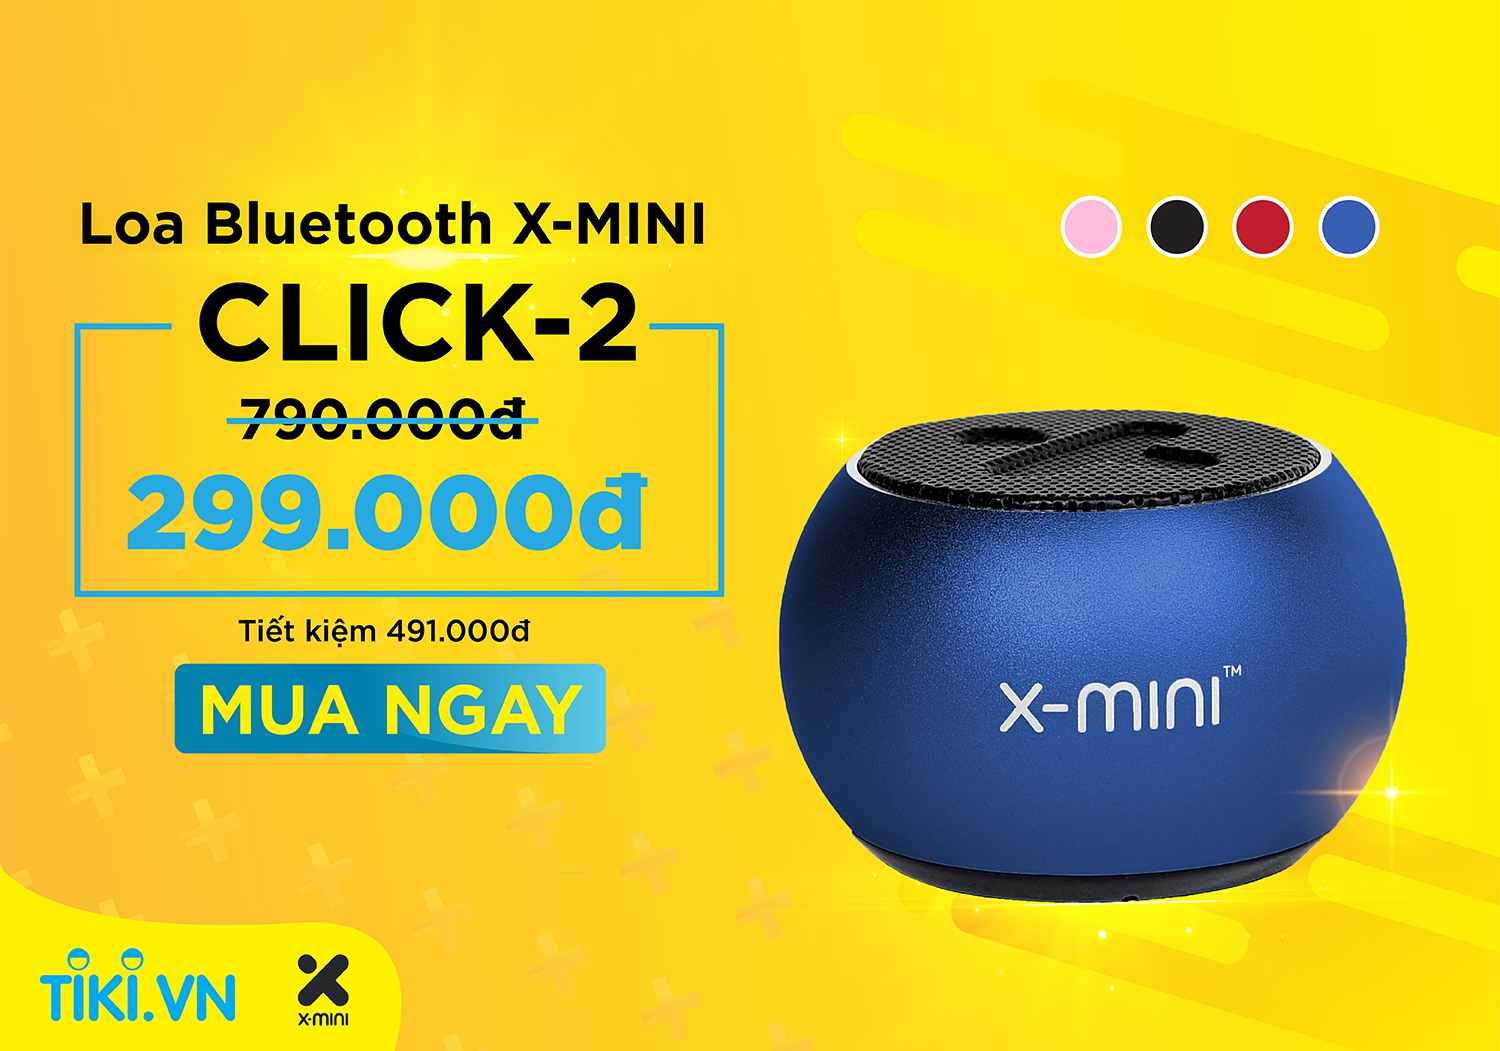 Loa Bluetooth X-mini CLICK-2.jpg